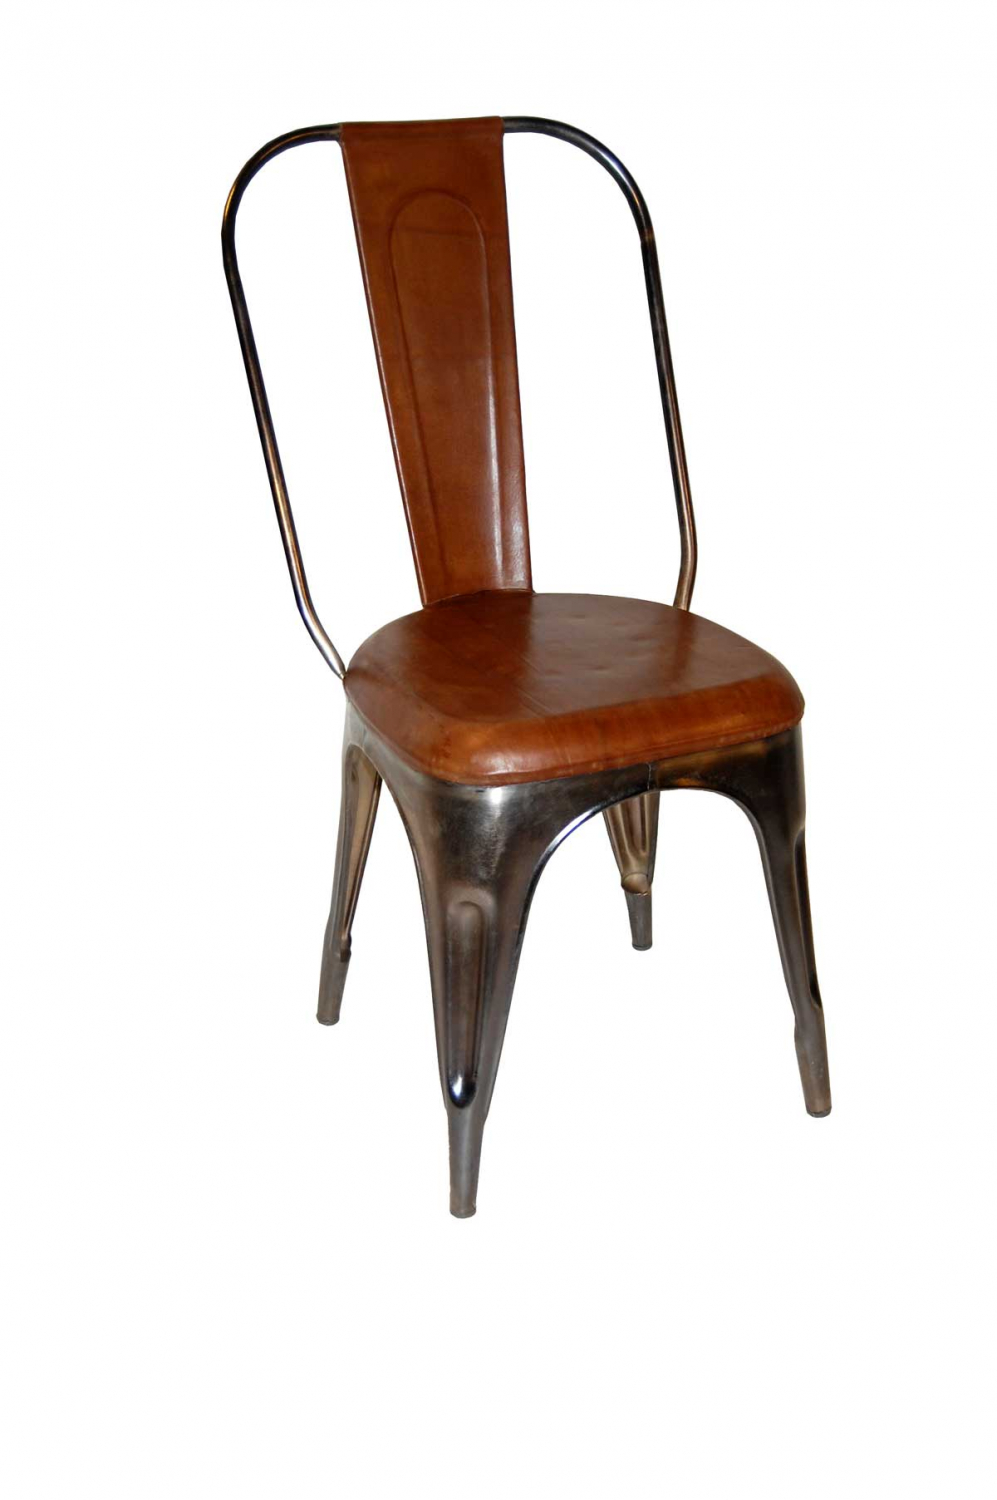 Køb TRADEMARK LIVING spisebordsstol - ægte brunt læder og shiny jernstel - Pris 1599.00 kr.